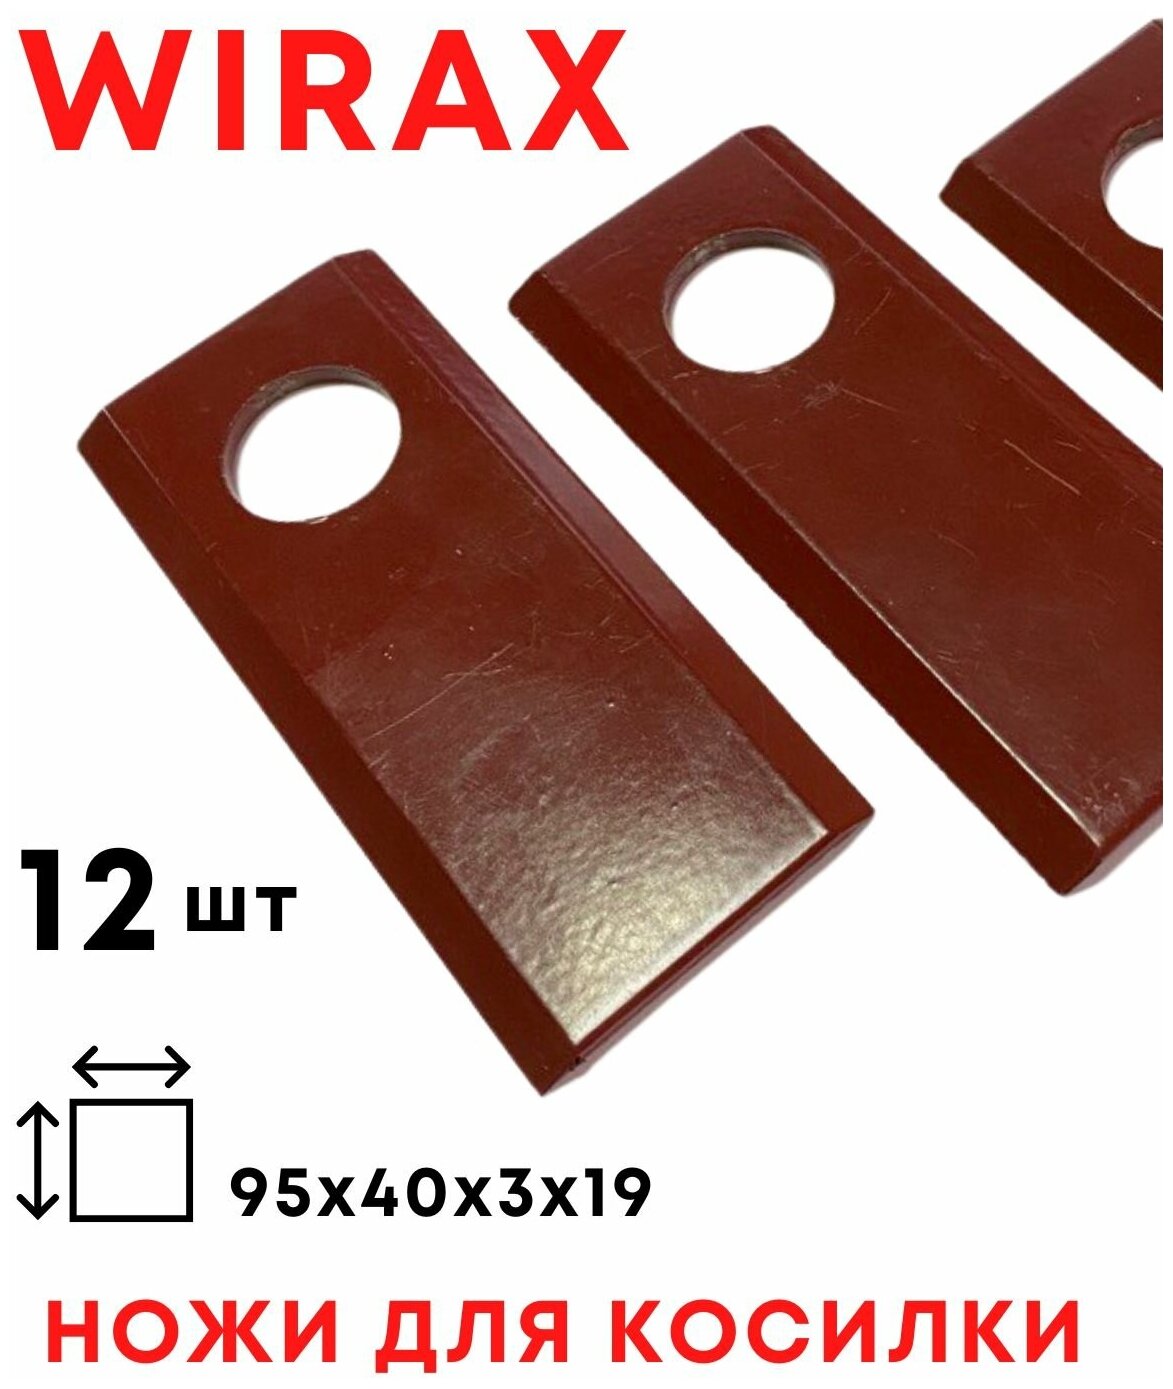 Ножи на косилку Виракс, ножи для польской роторной косилки WIRAX / 12 шт / комплект